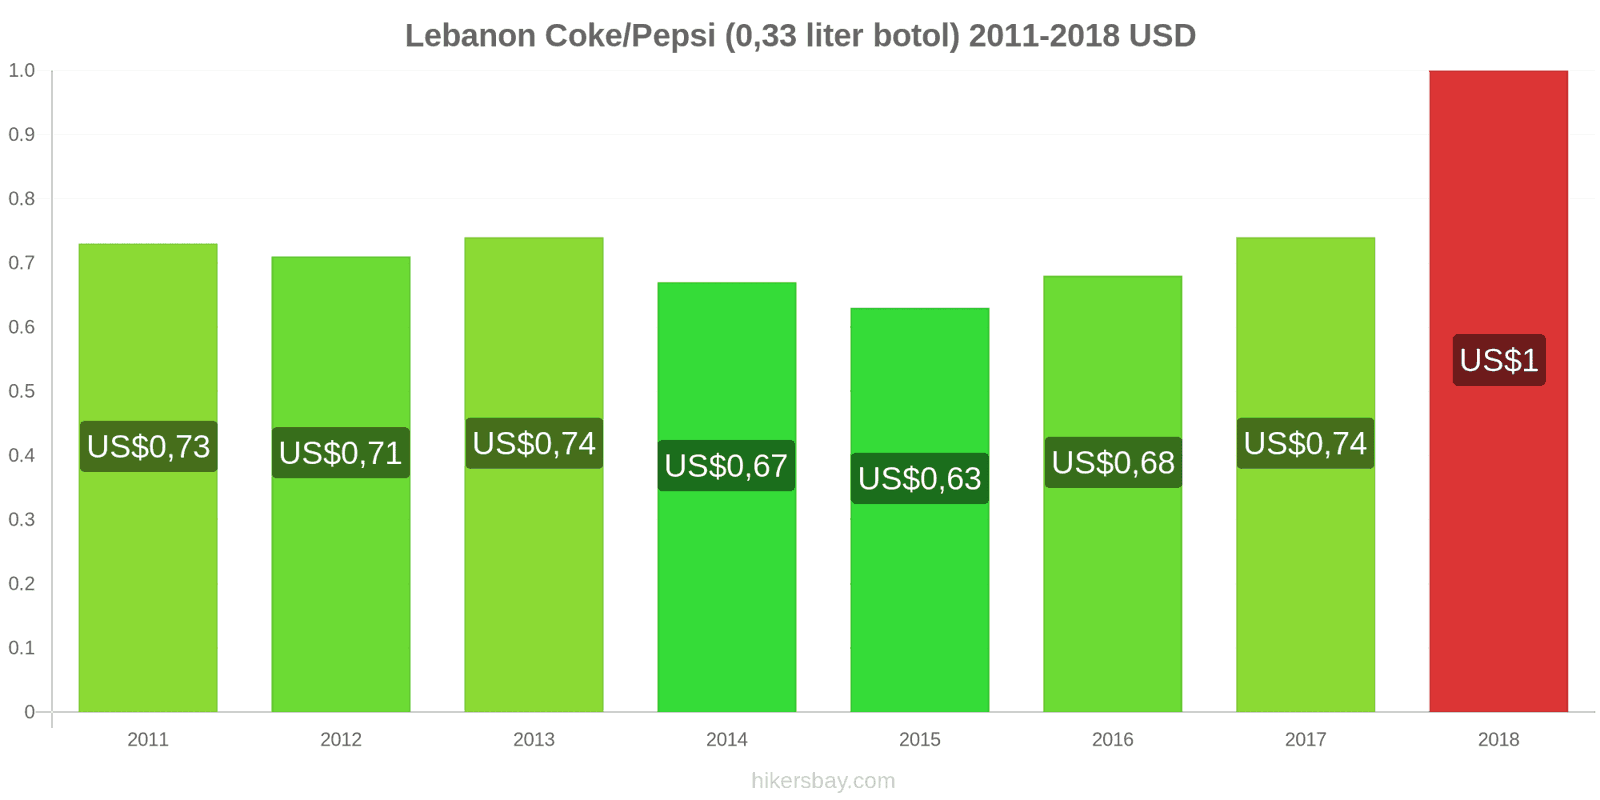 Lebanon perubahan harga Coca-Cola/Pepsi (botol 0.33 liter) hikersbay.com